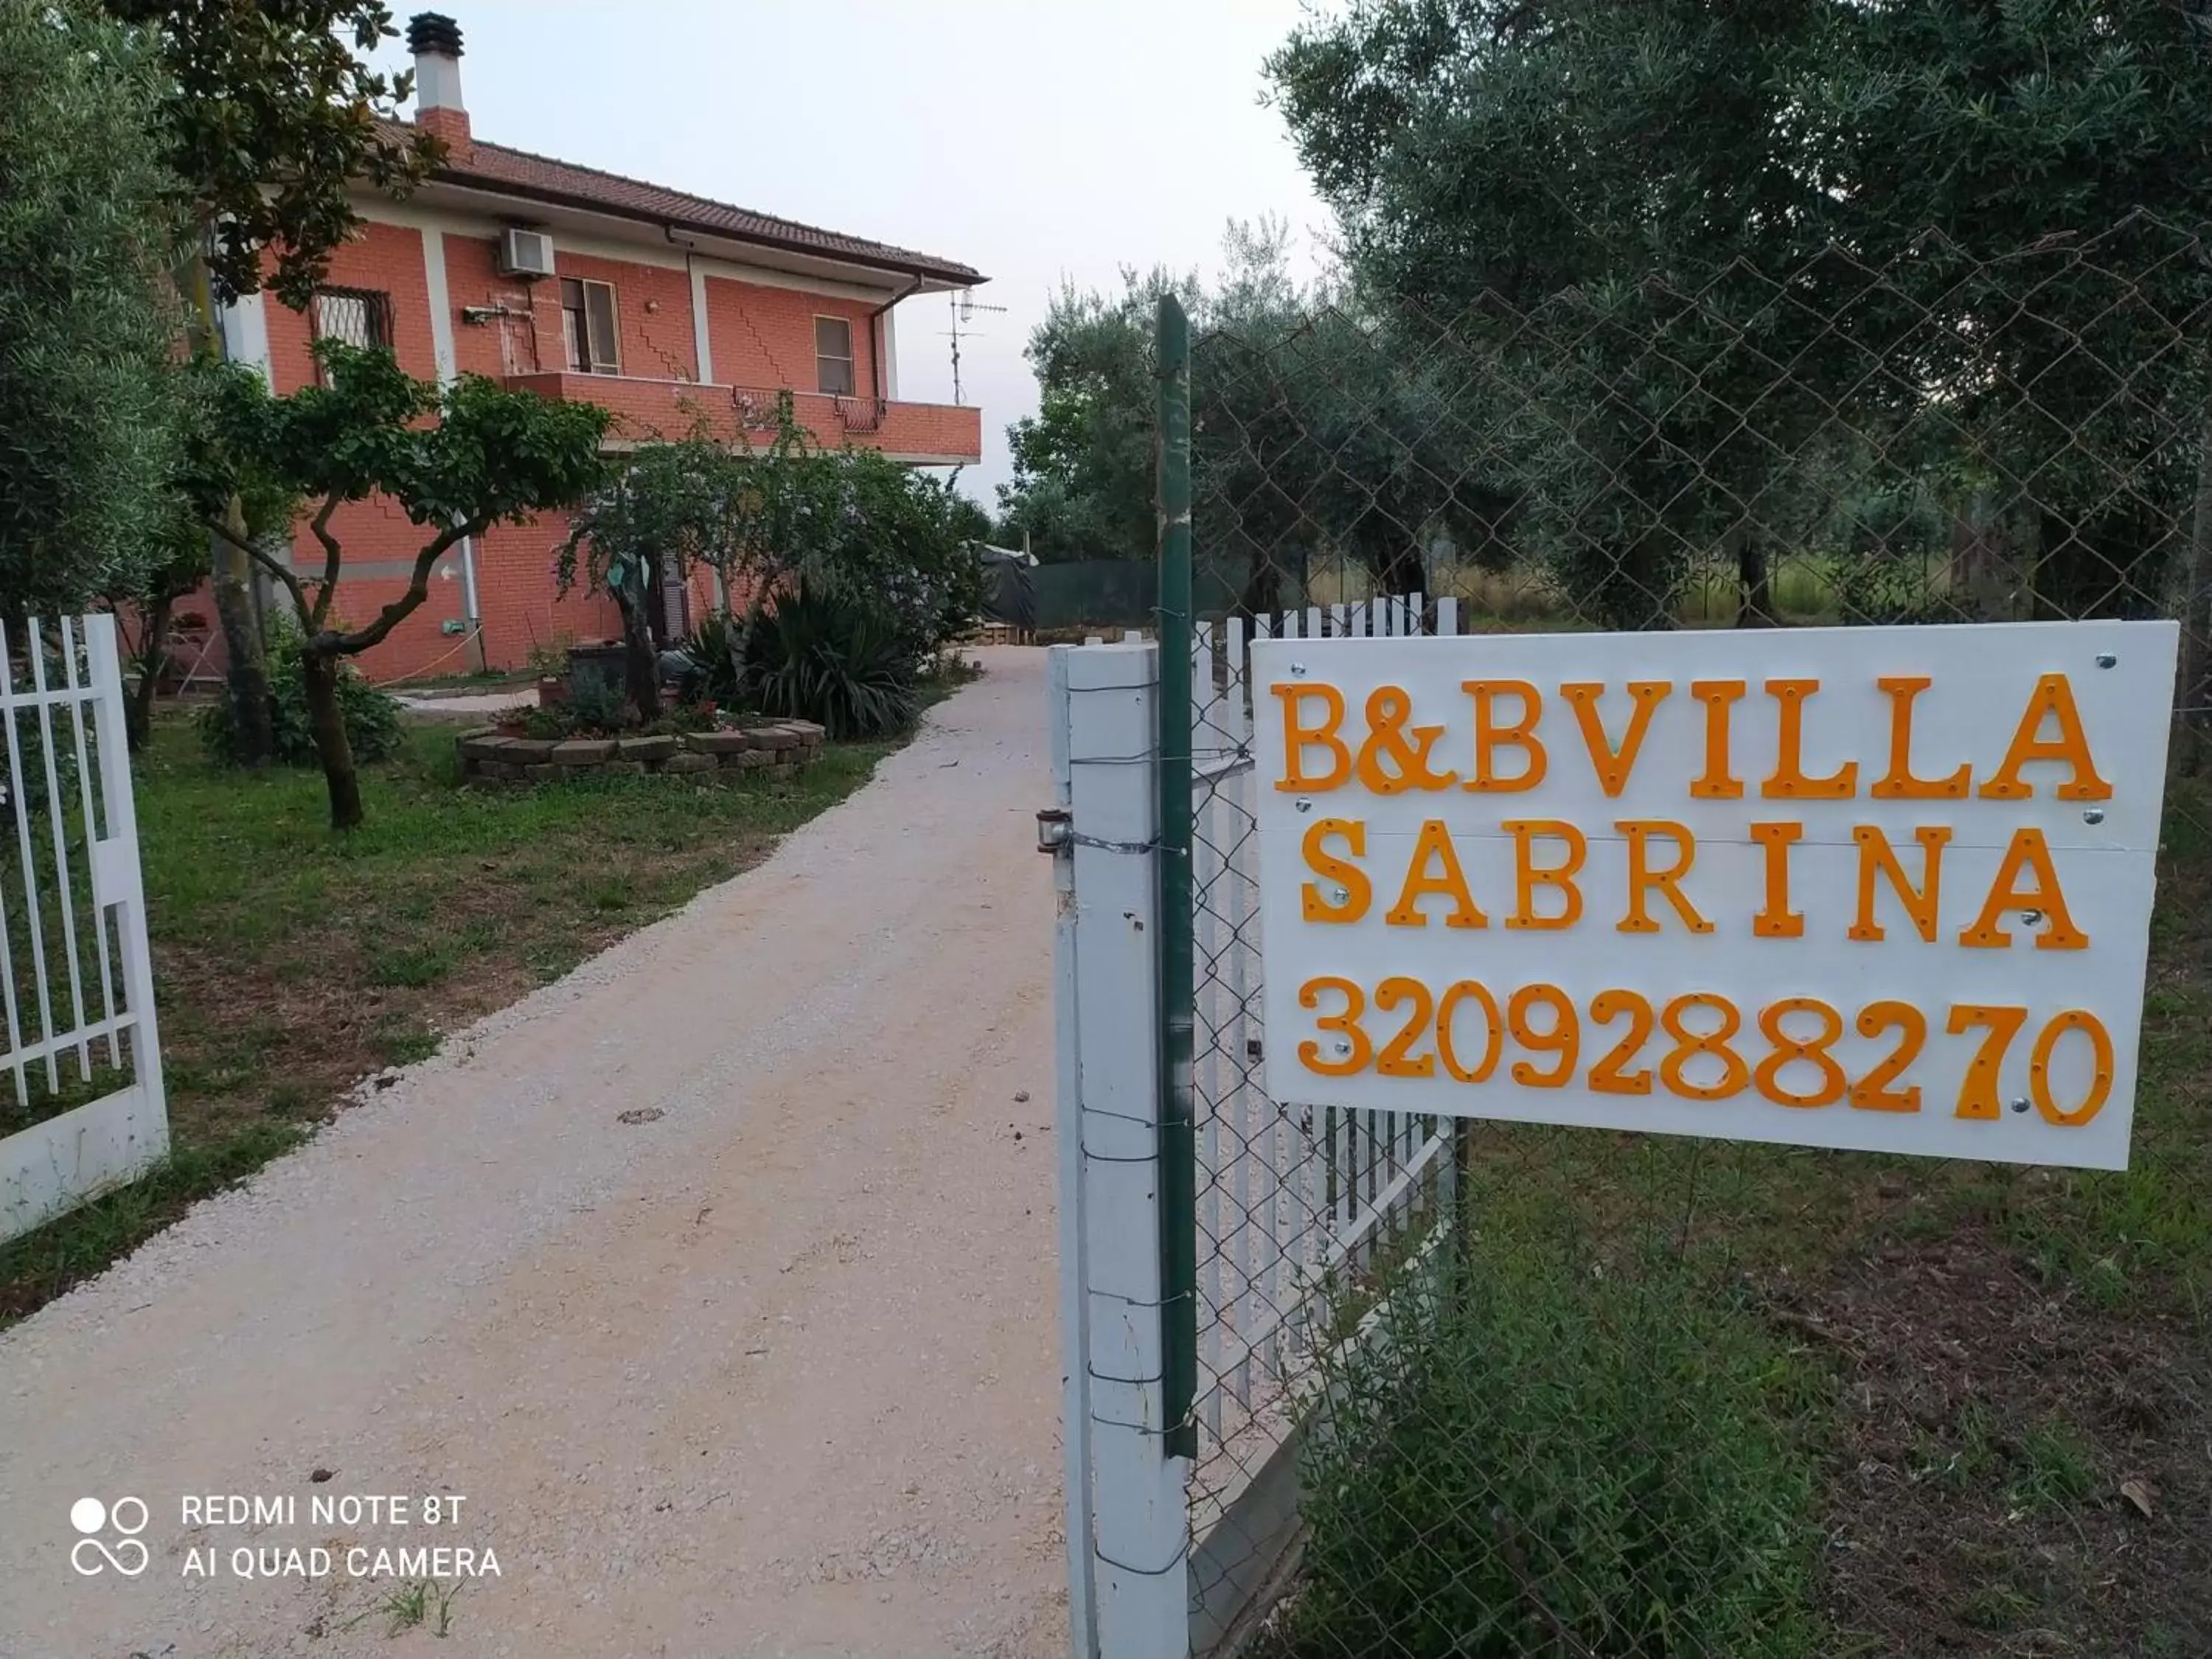 Property logo or sign in B&B Villa Sabrina